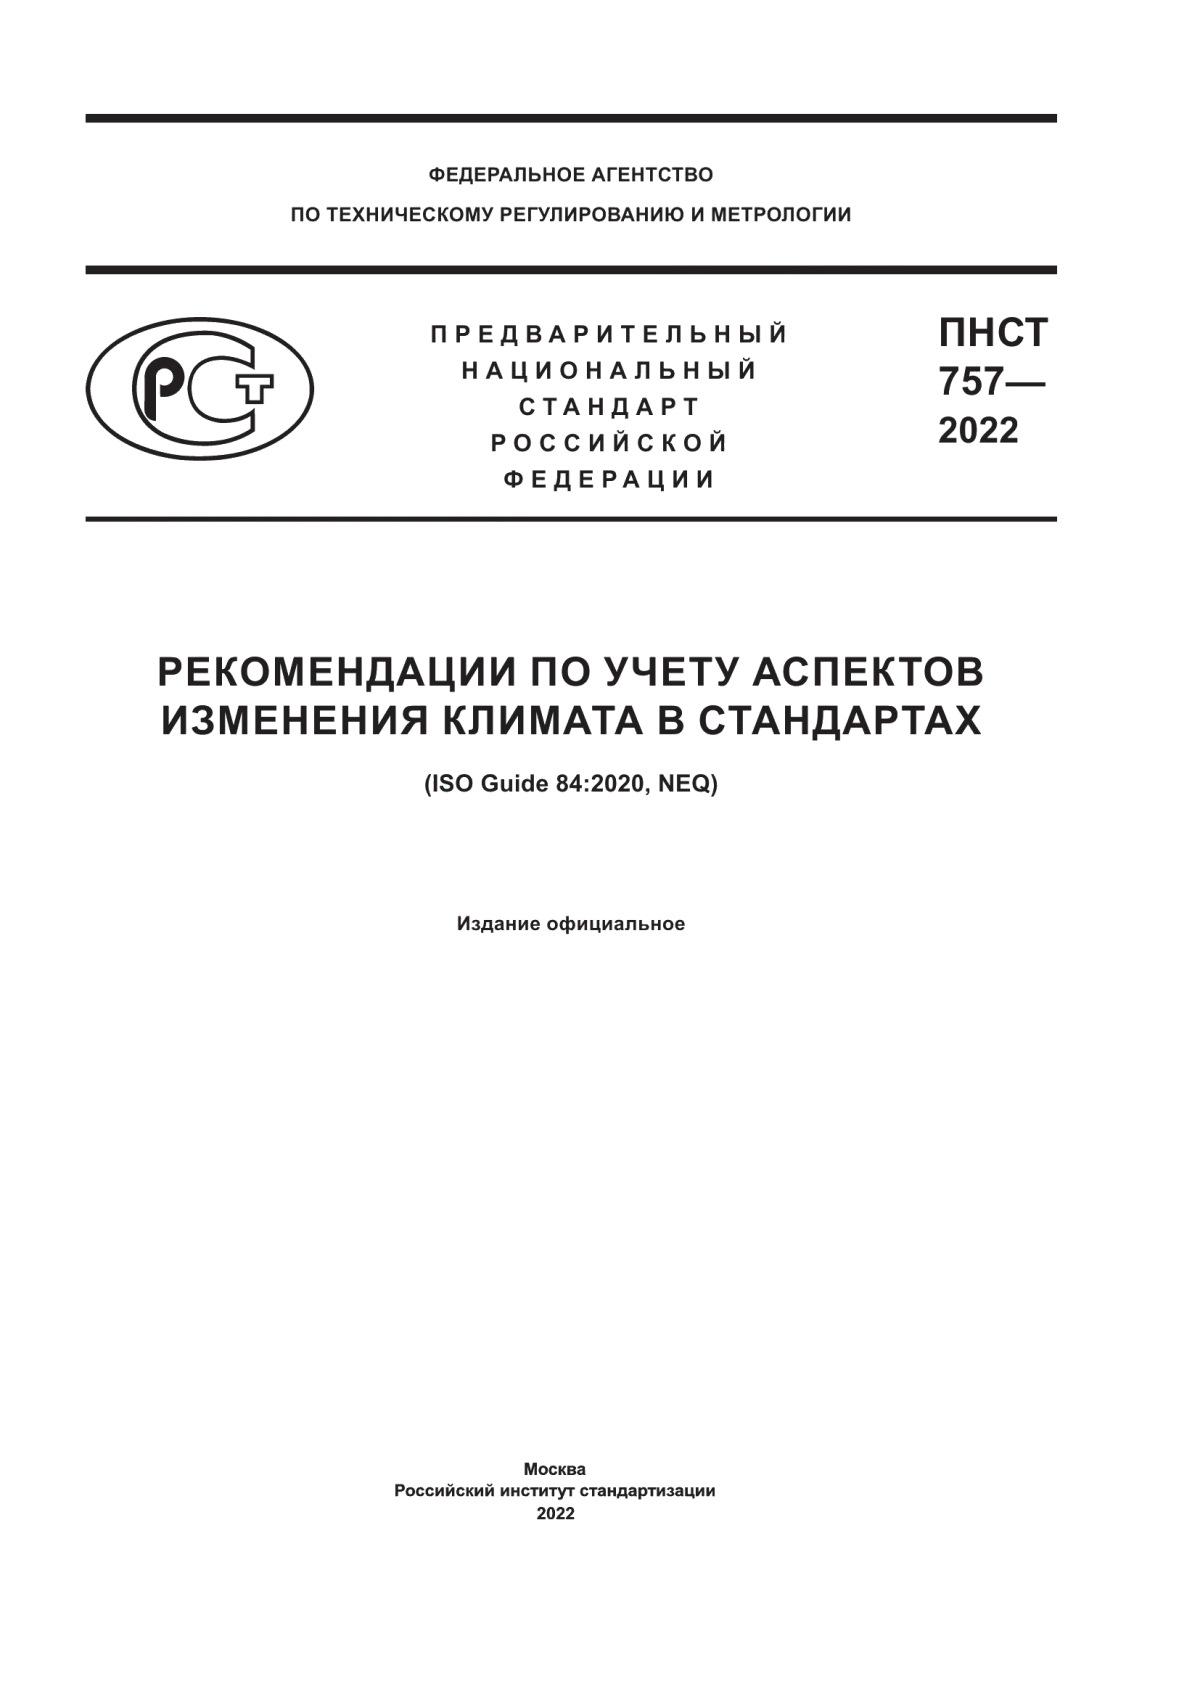 ПНСТ 757-2022 Рекомендации по учету аспектов изменения климата в стандартах